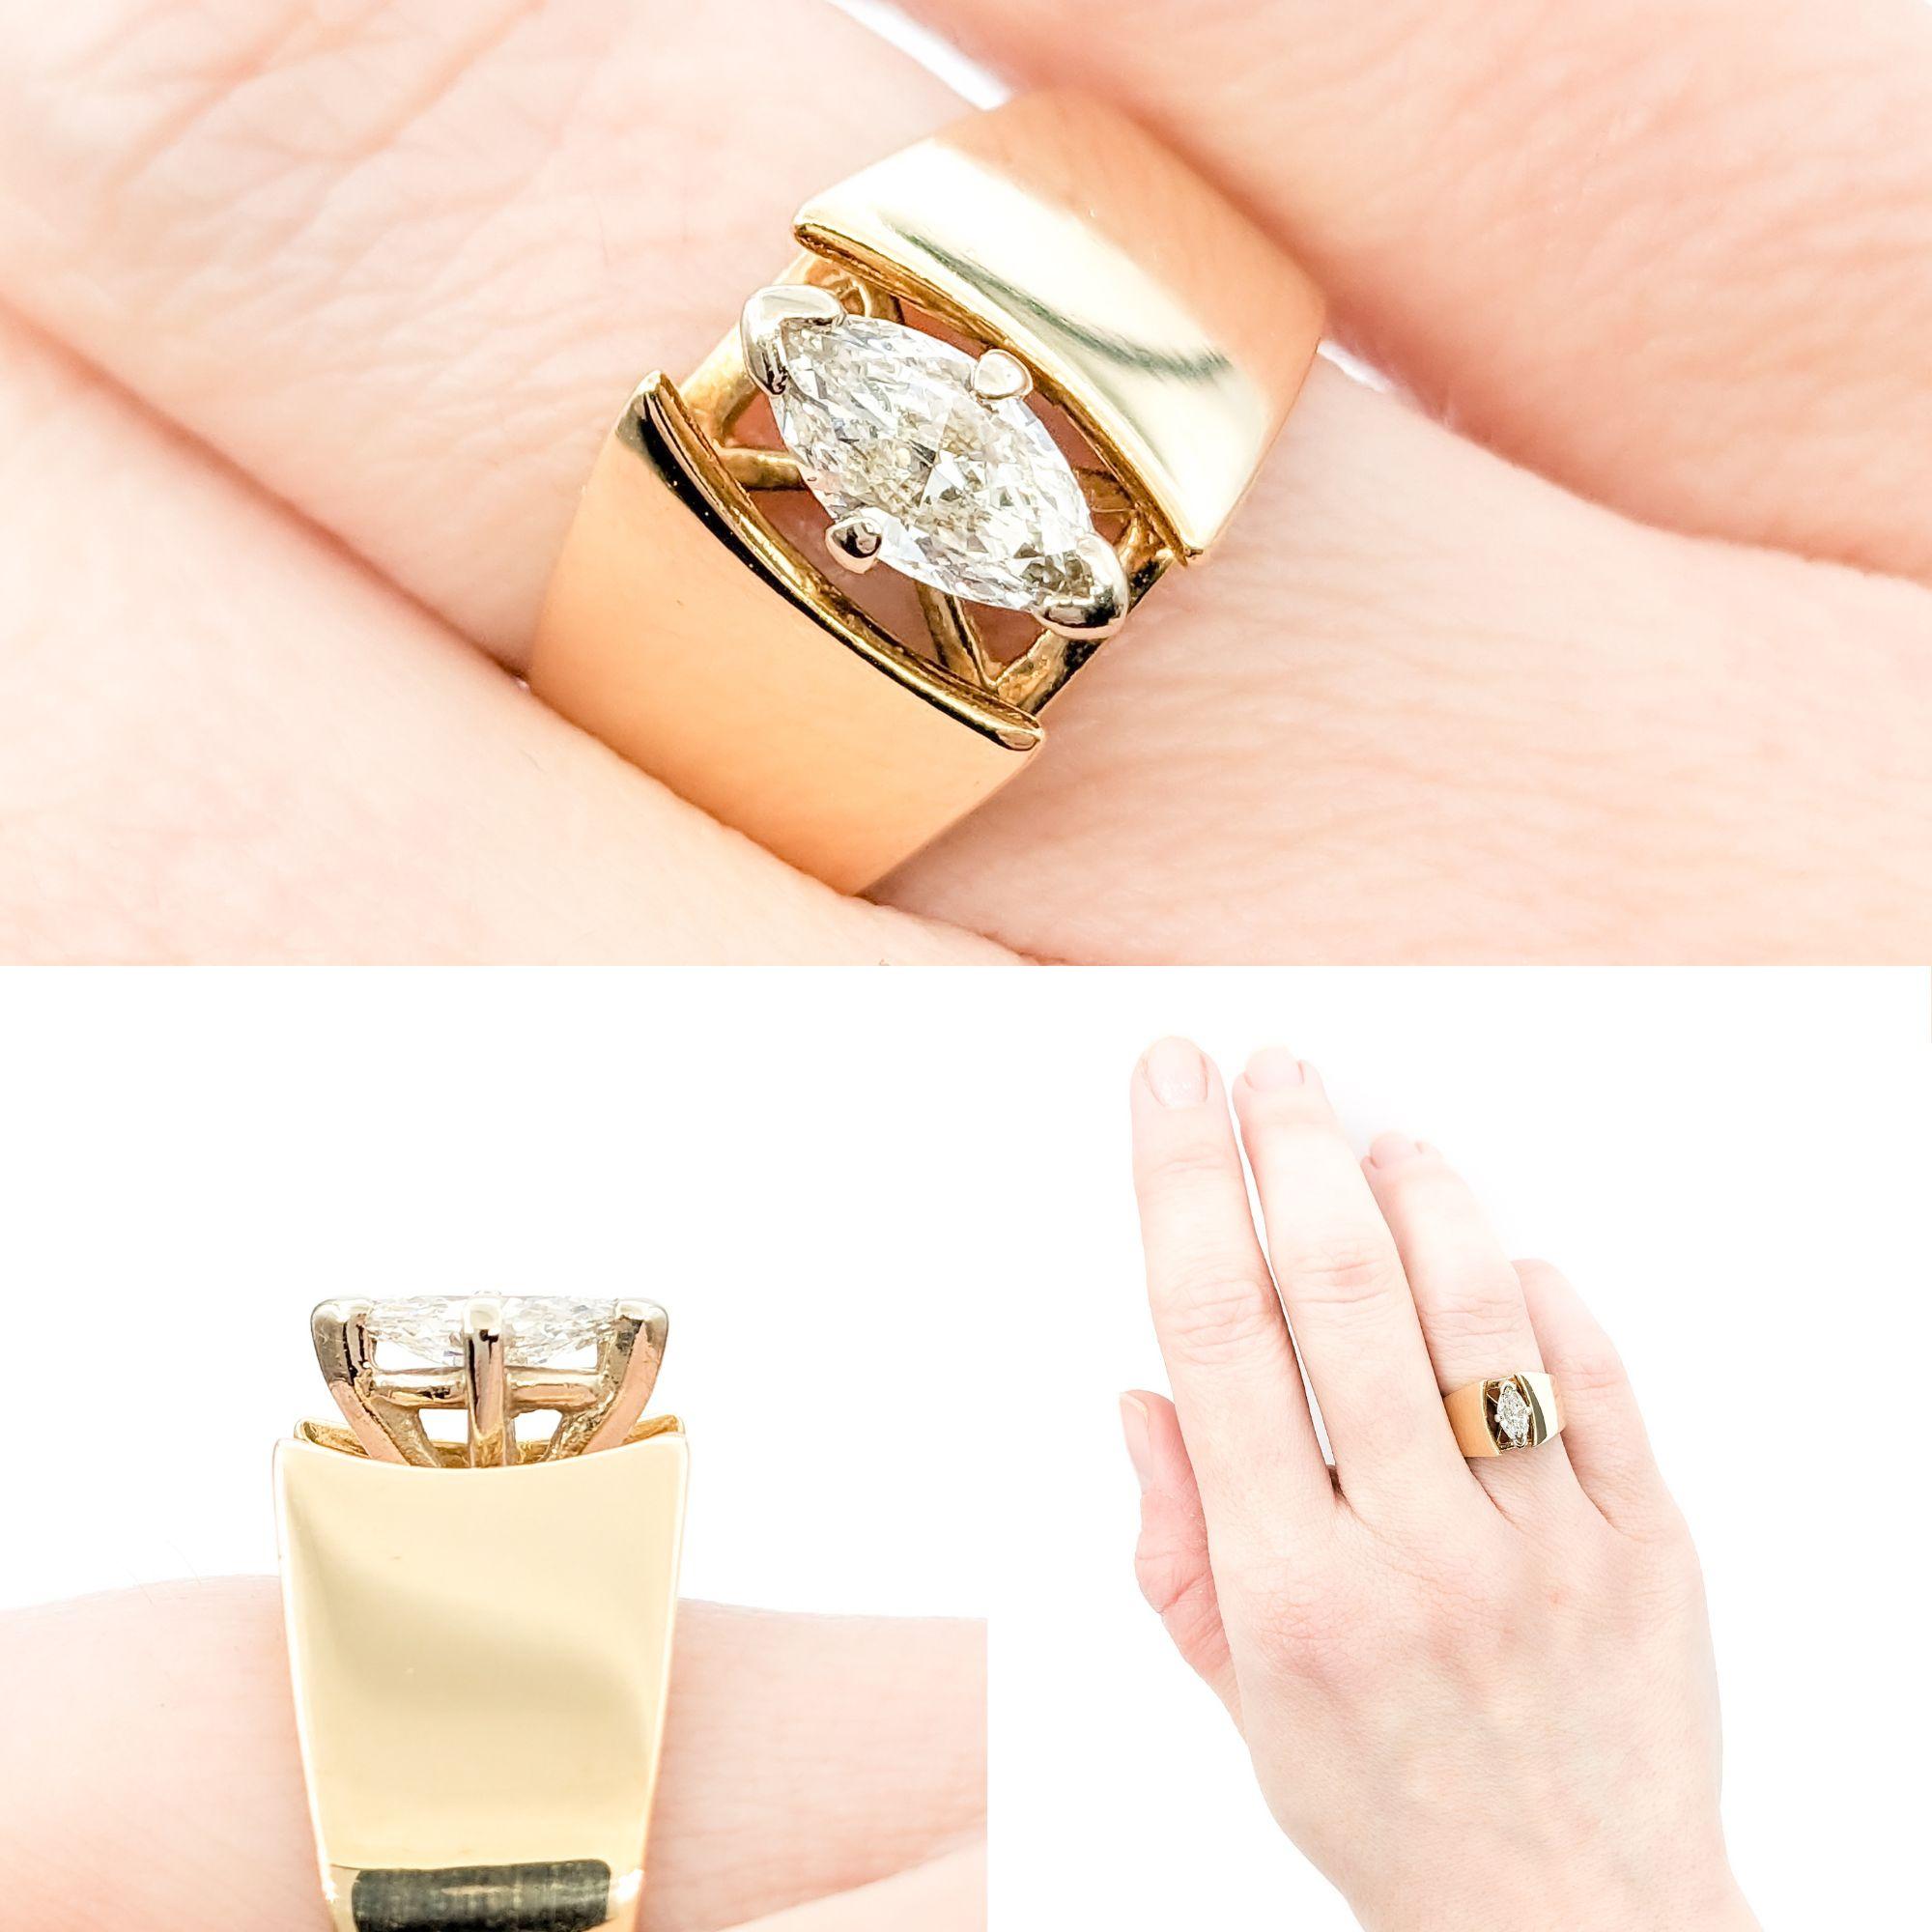 .60ct Diamantring in Gelbgold

Wir präsentieren diesen atemberaubenden Diamant-Verlobungsring Solitaire aus 14 Karat Gelbgold. Der Ring ist mit einem 0,60-karätigen Diamanten besetzt, der in einer klassischen 4-Zacken-Fassung gefasst ist. Dieser